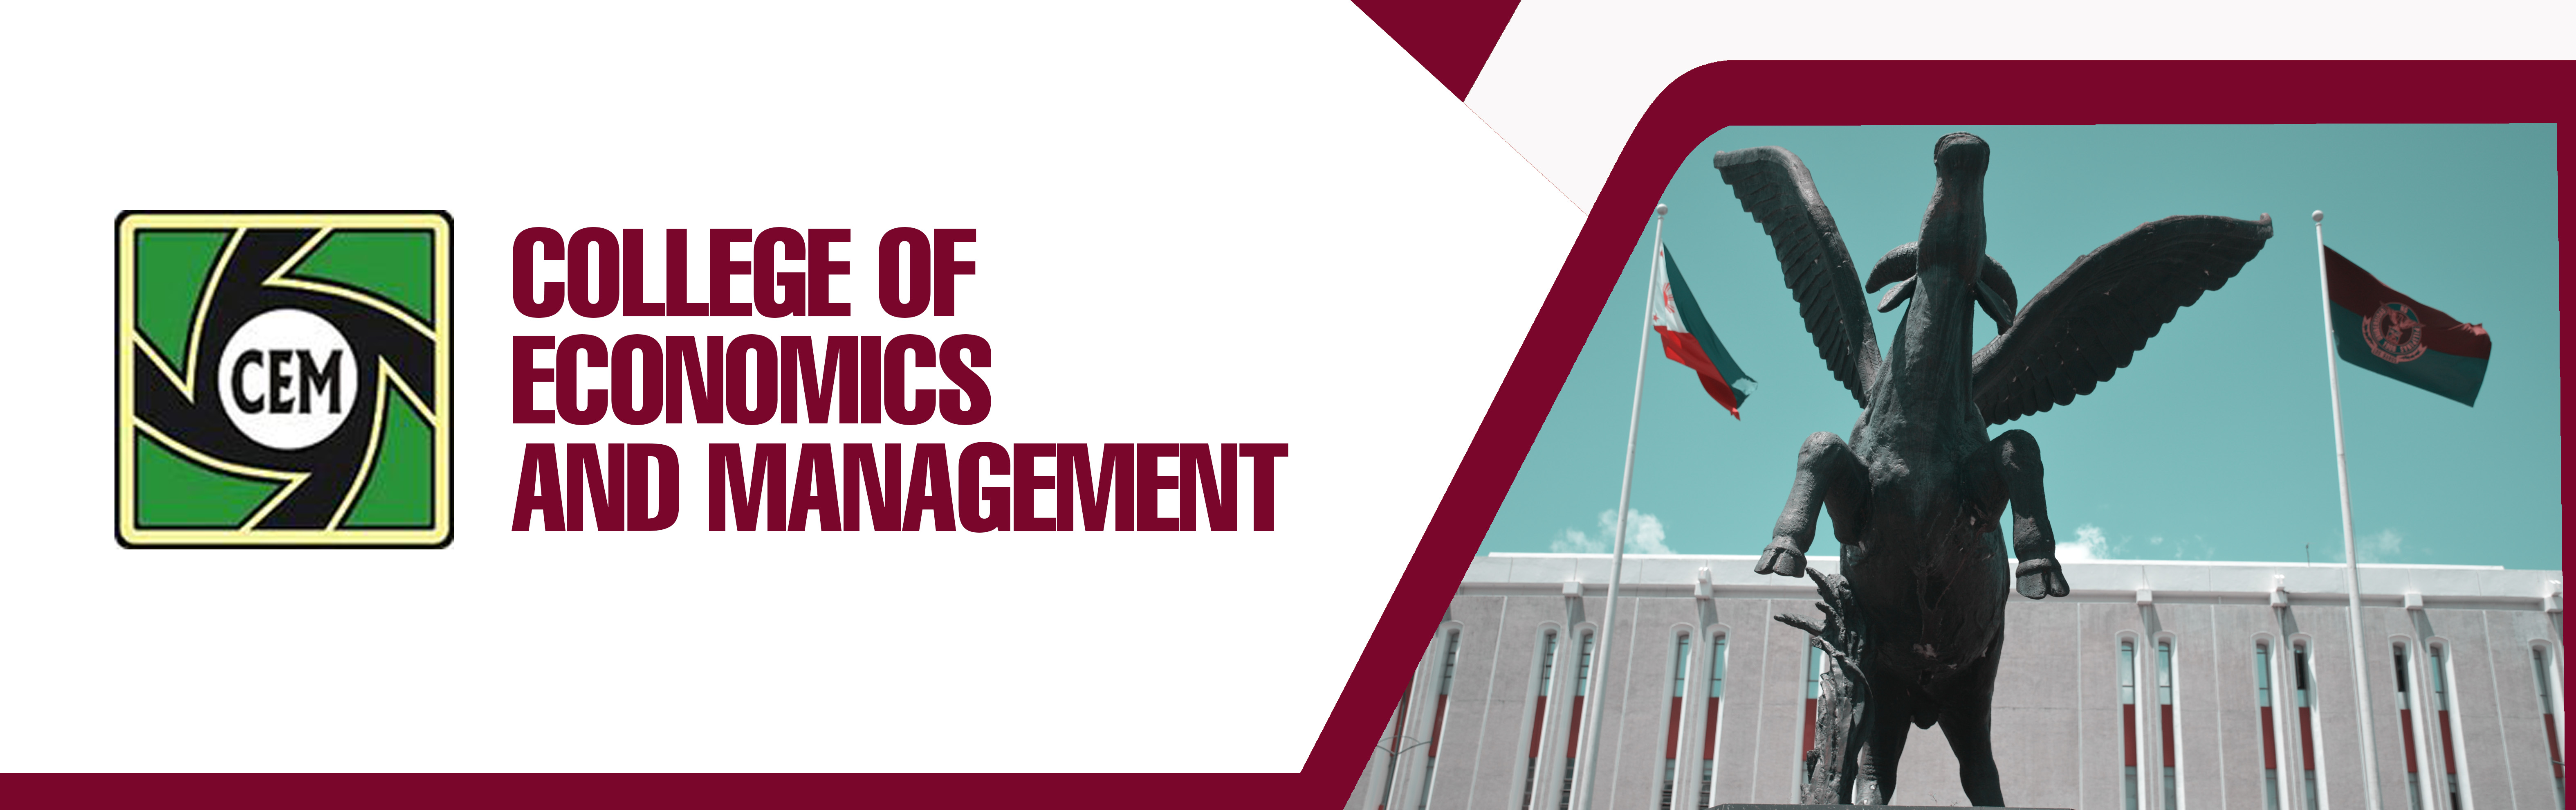 College of Economics and Management (CEM)